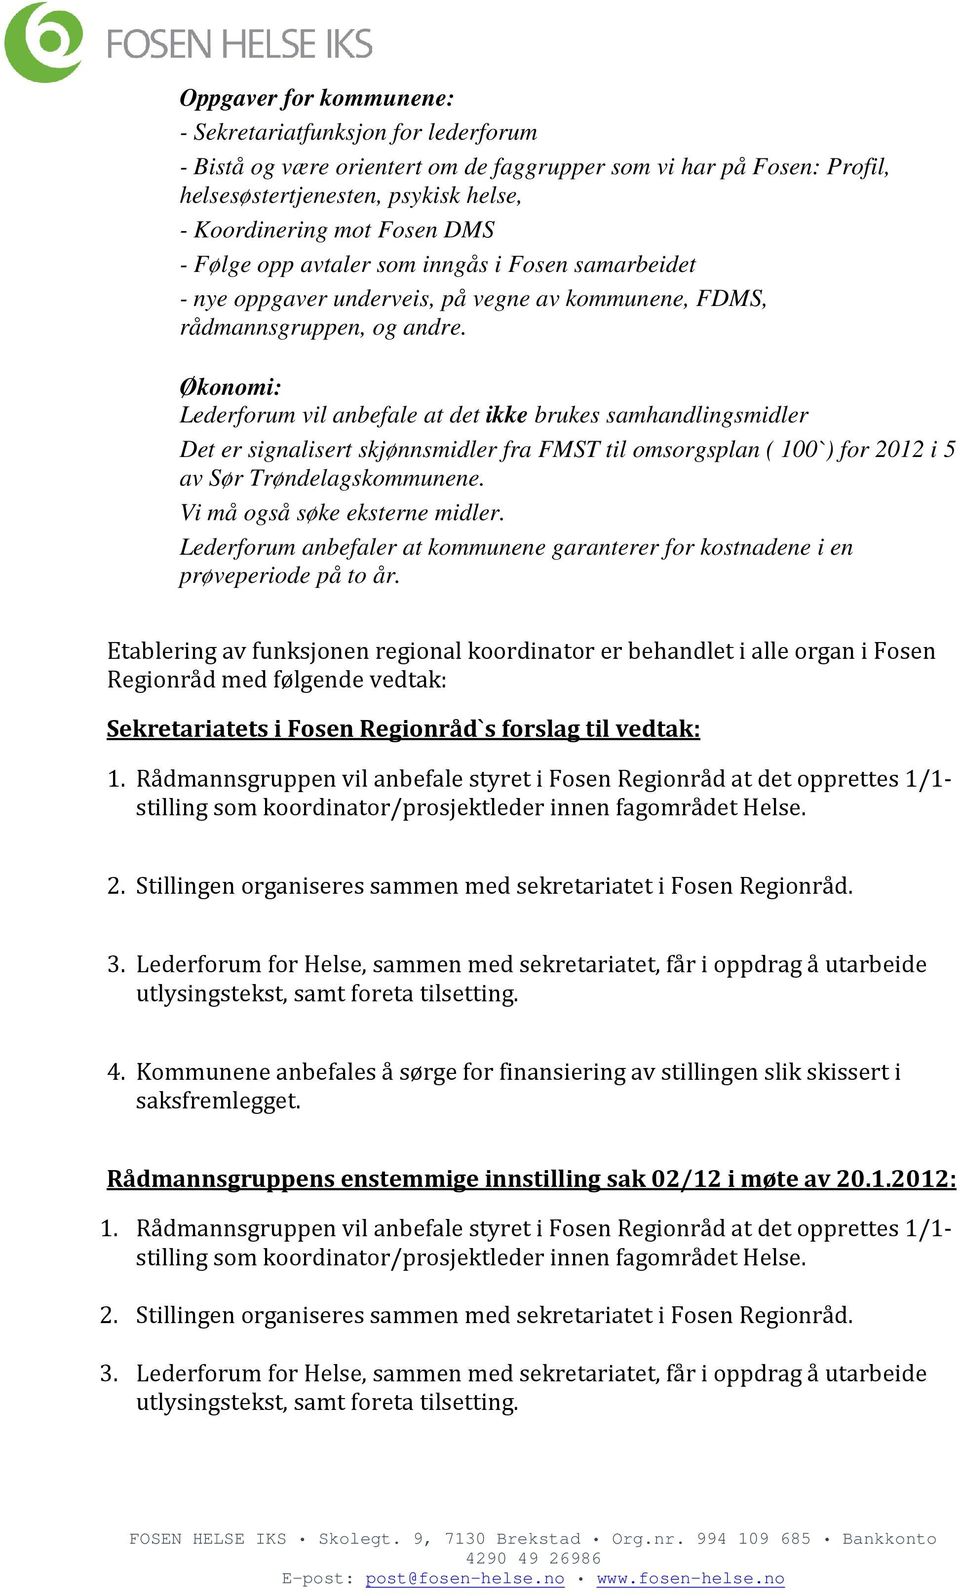 Økonomi: Lederforum vil anbefale at det ikke brukes samhandlingsmidler Det er signalisert skjønnsmidler fra FMST til omsorgsplan ( 100`) for 2012 i 5 av Sør Trøndelagskommunene.